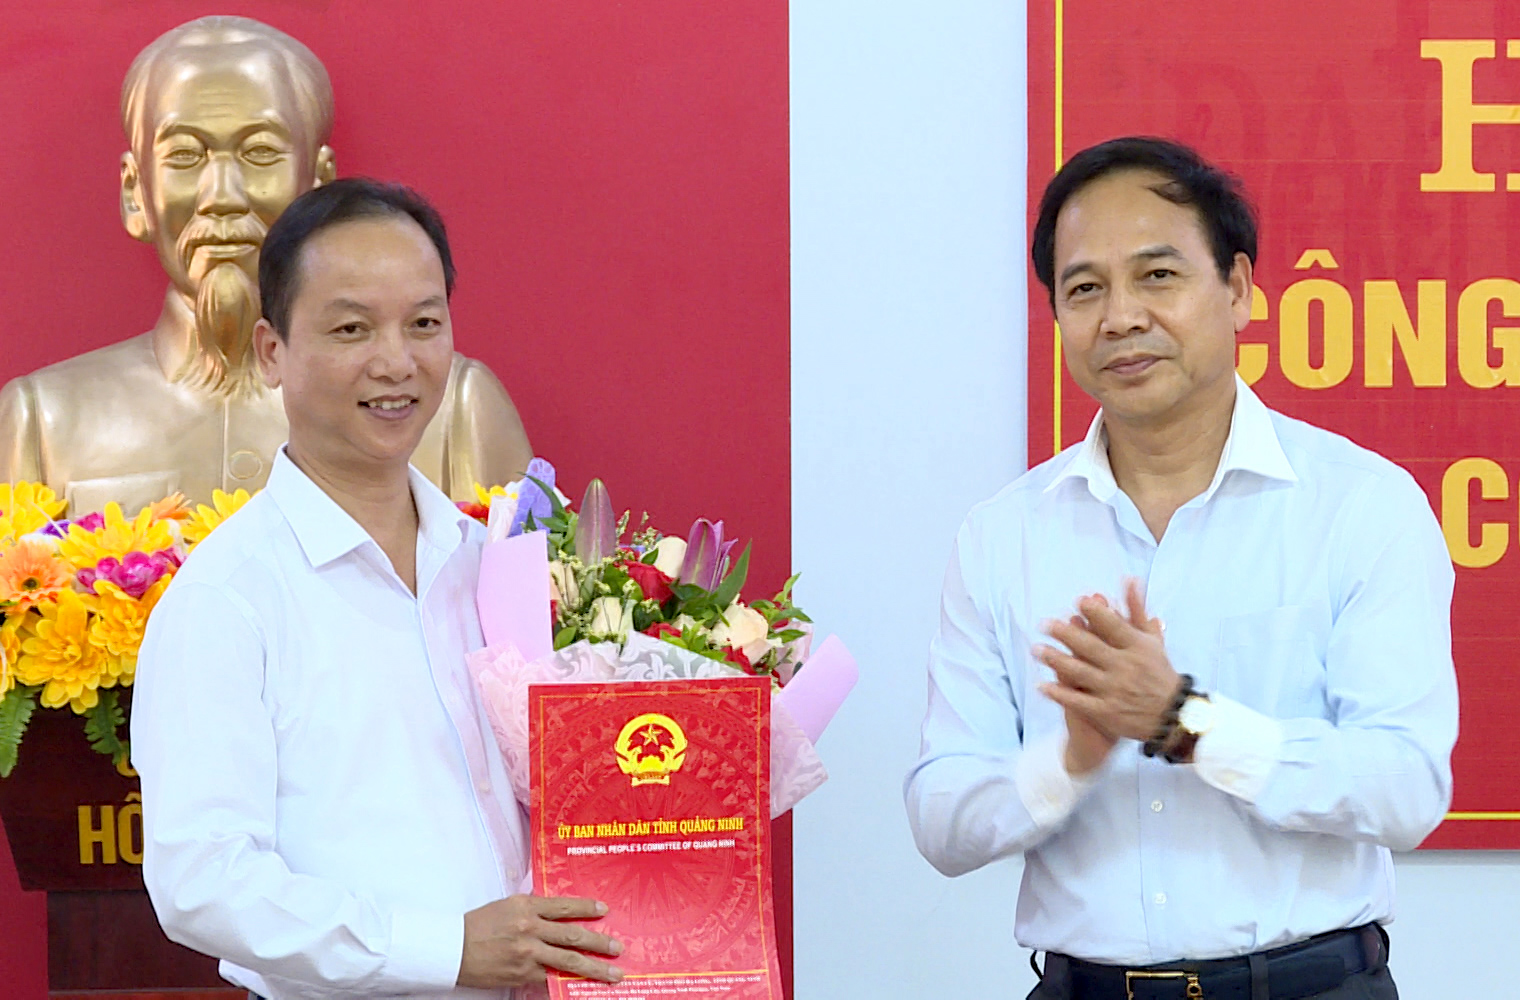 Đồng chí Đặng Huy Hậu, Phó Chủ tịch Thường trực UBND tỉnh trao quyết định cho ông Khiếu Anh Tú giữ chức vụ Phó Chủ tịch UBND huyện Ba Chẽ khóa XIX, nhiệm kỳ 2016-2021.